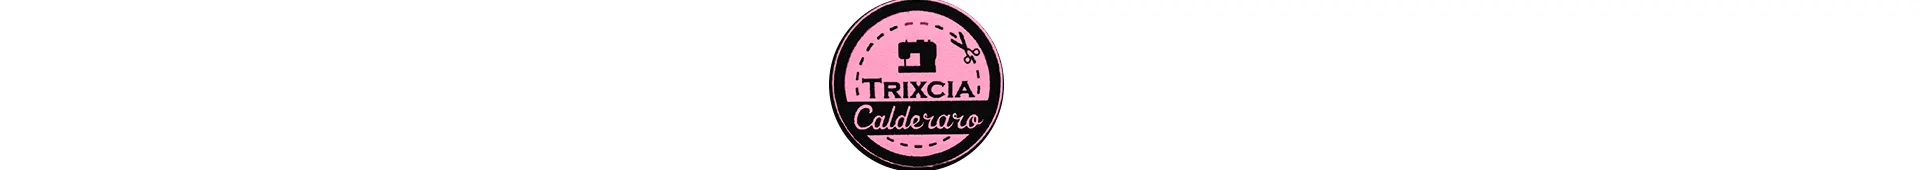 Imagen 1 del perfil de Trixcia Calderaro